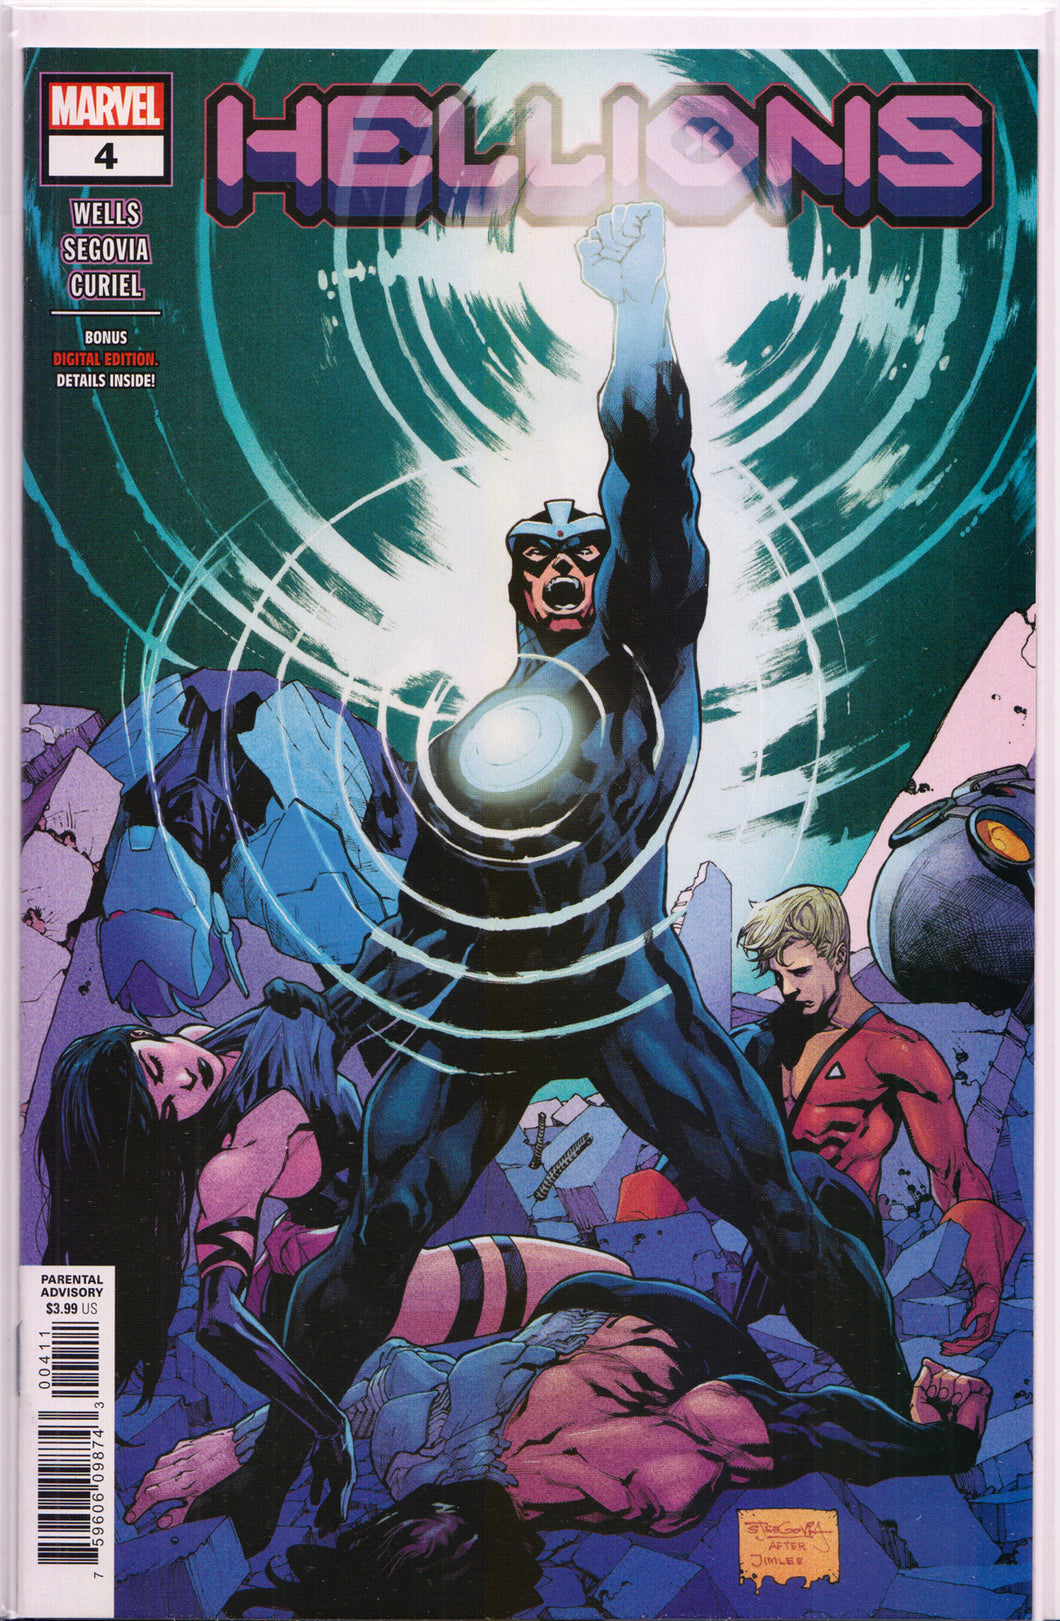 HELLIONS #4 (MAIN COVER)(ALEX SUMMERS) COMIC BOOK ~ Marvel Comics